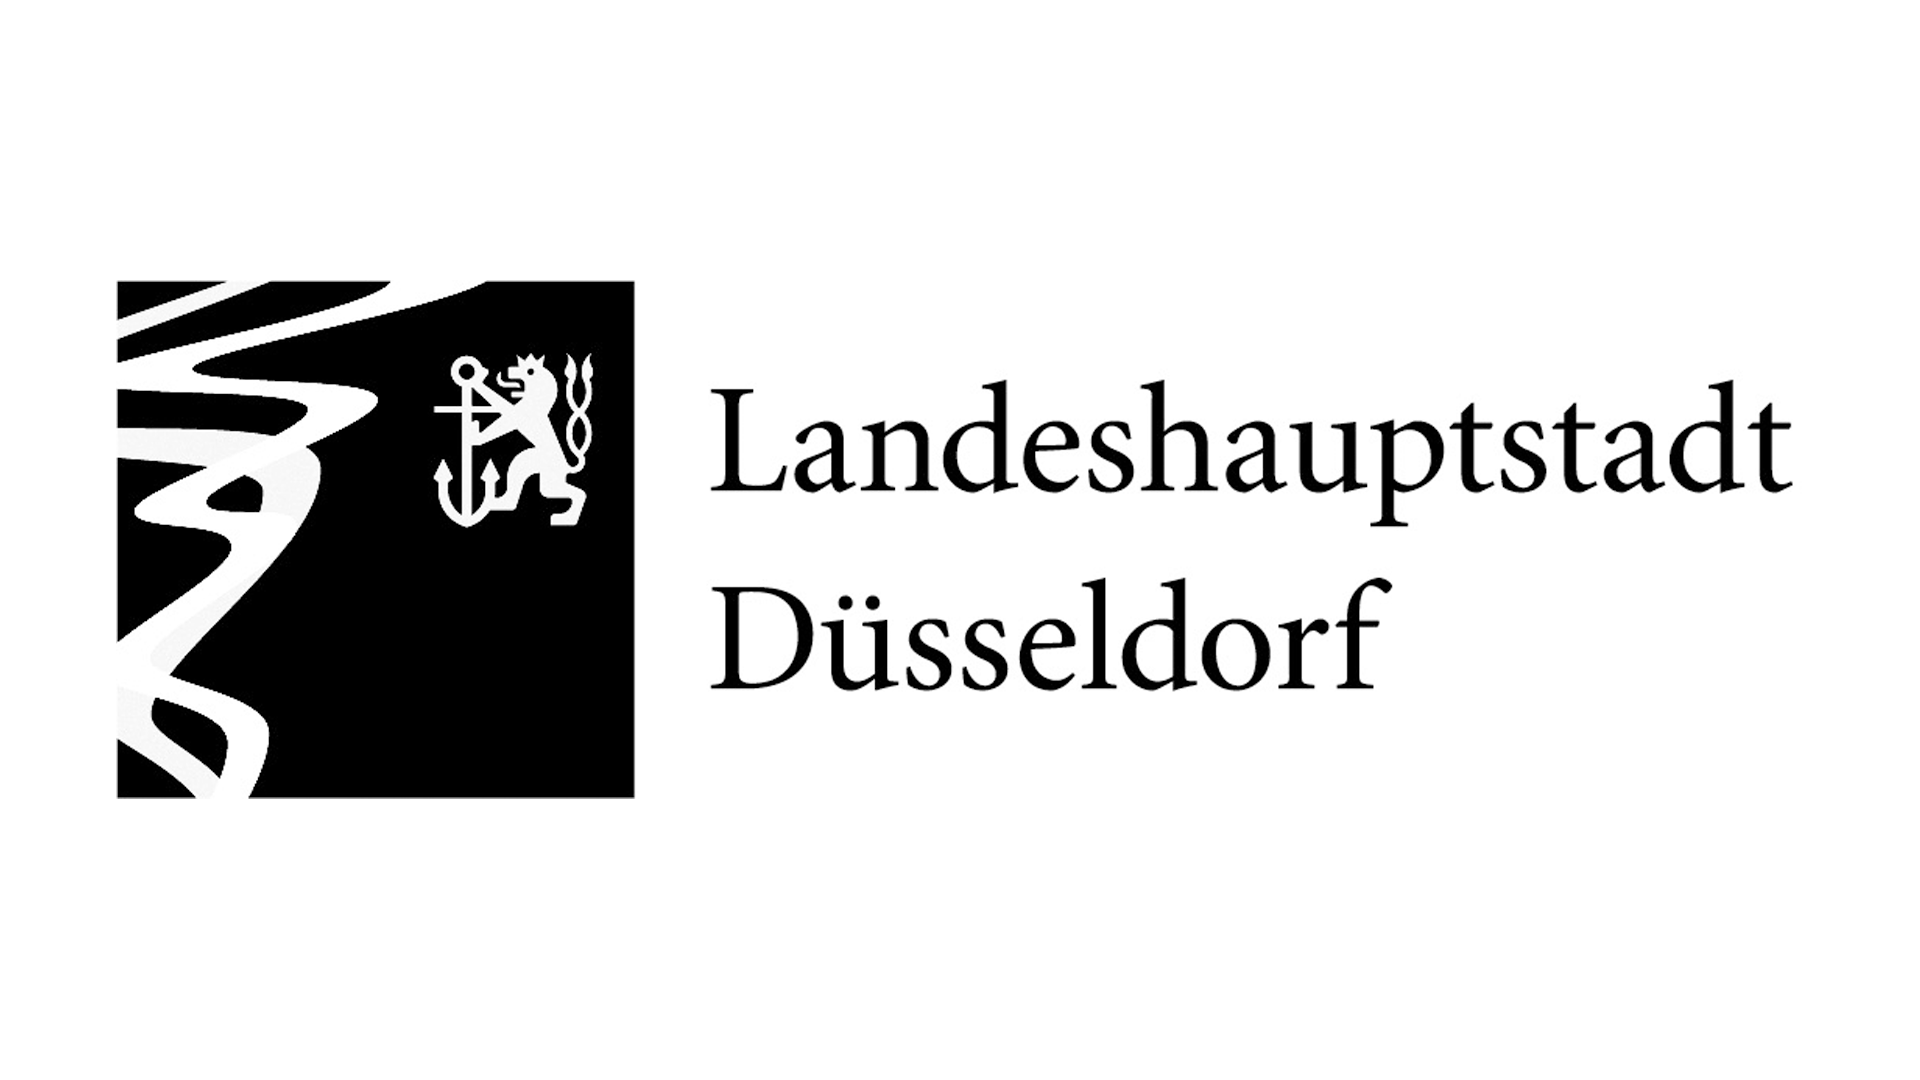 Landeshauptstadt dusseldorf logo